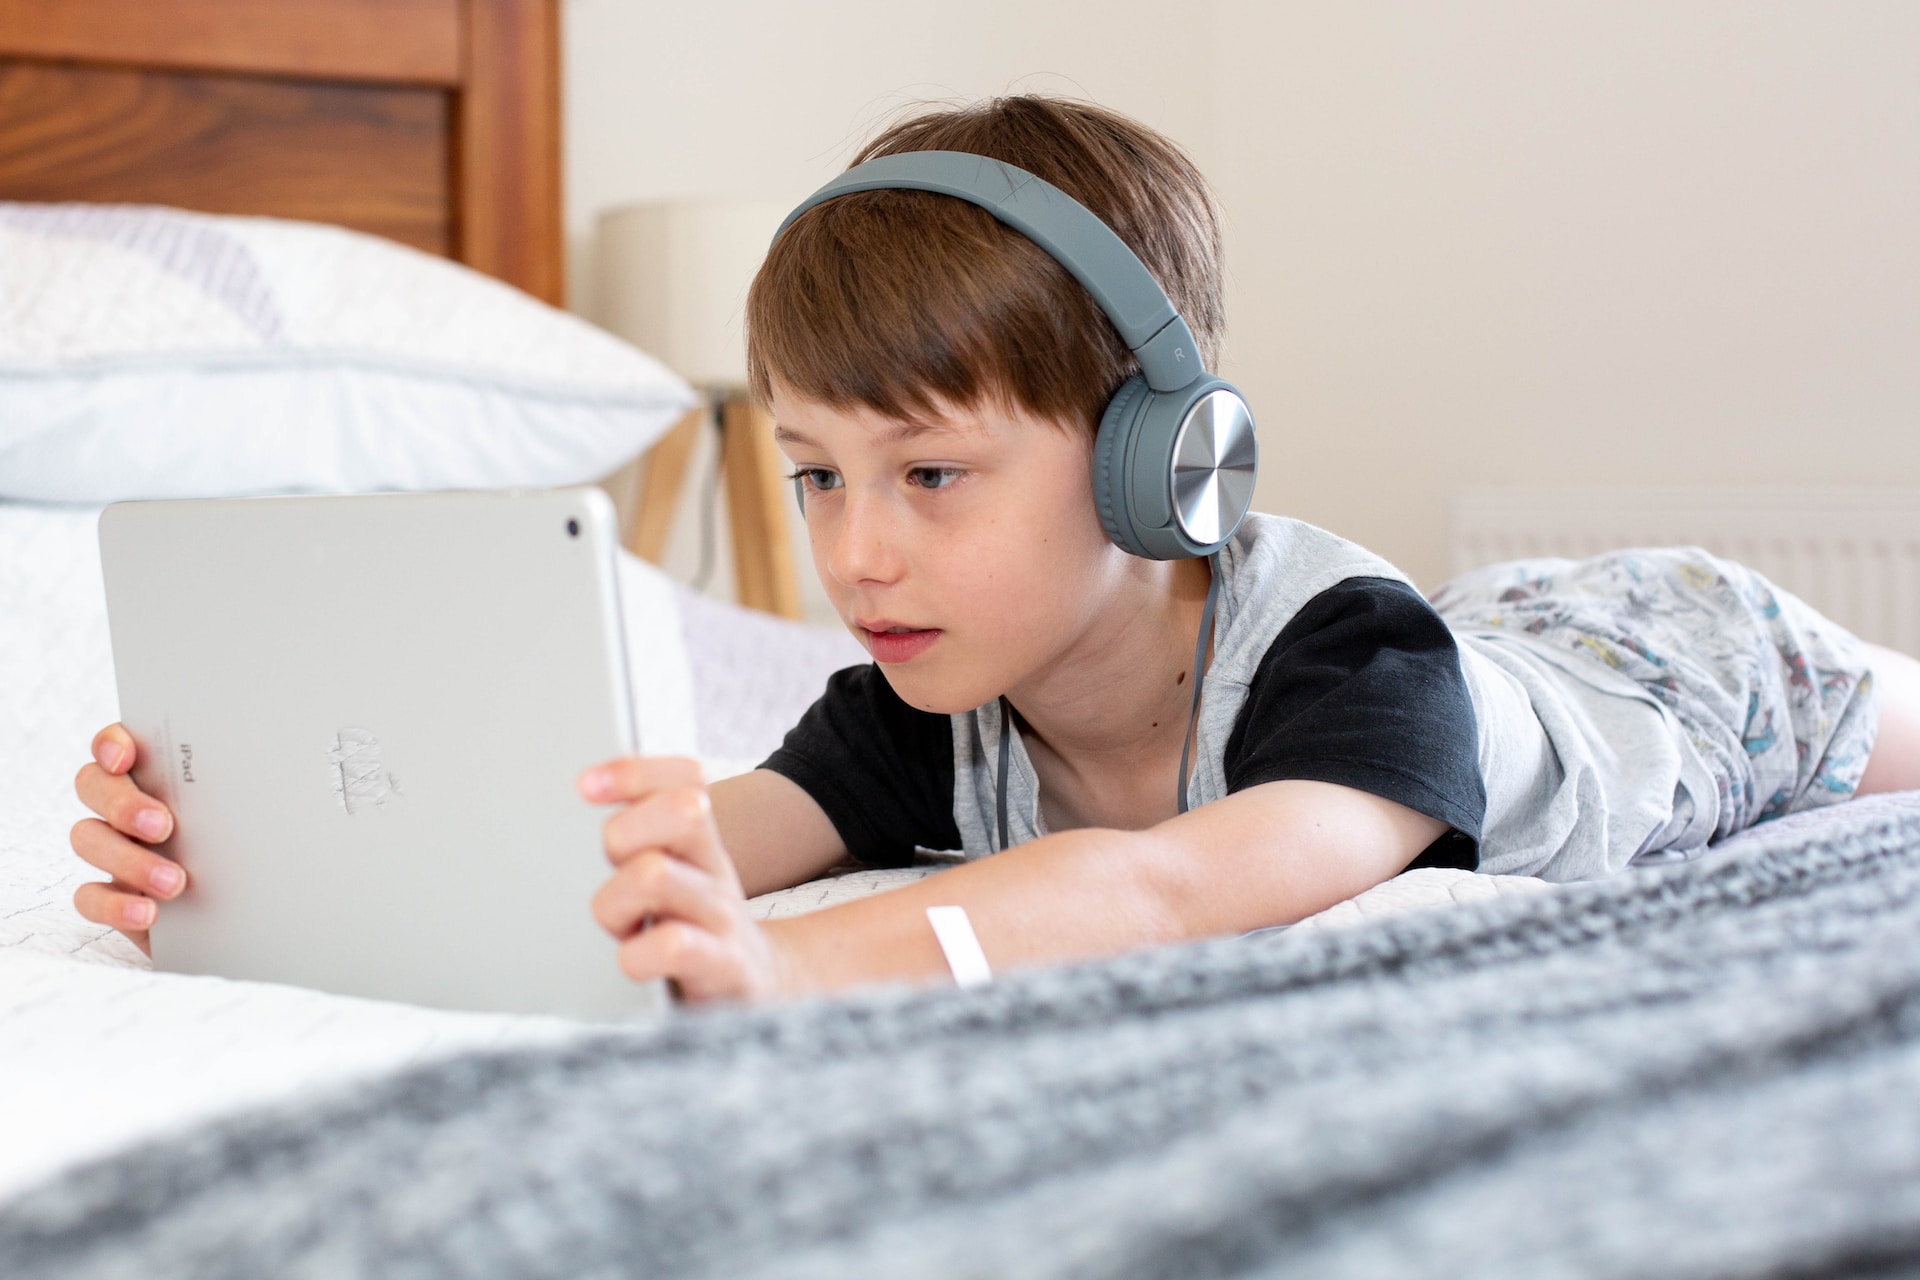 Casque Audio Enfant Filaire Avec Limiteur De Son 85 Db – Ecouteurs